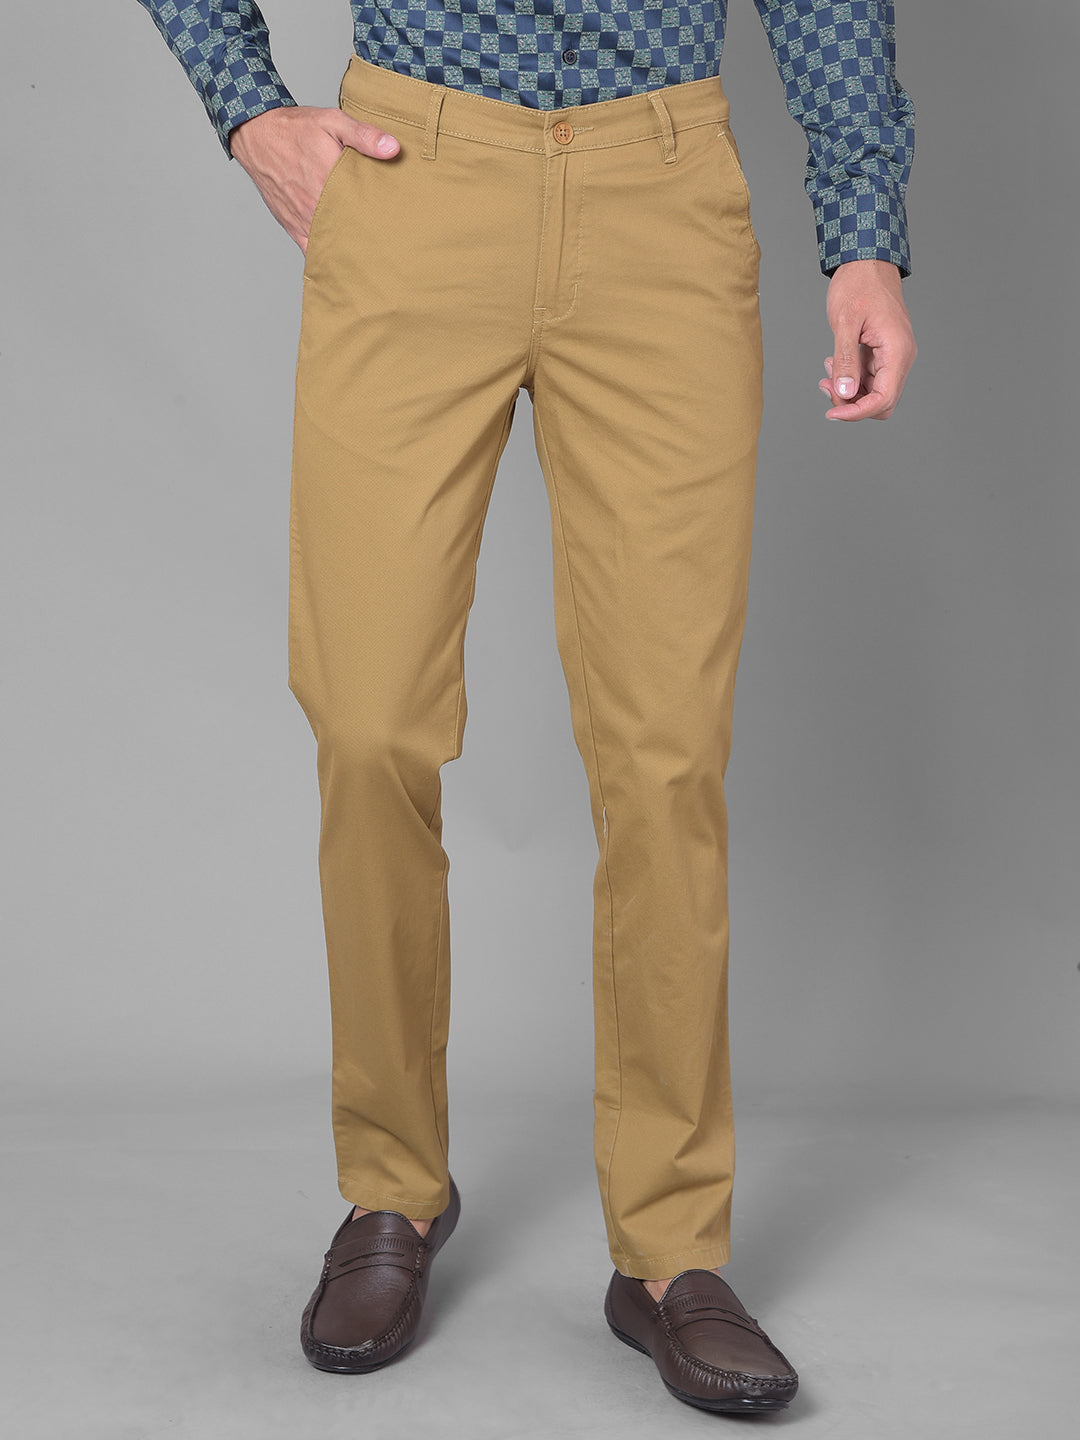 WROGN Slim Fit Men Khaki Trousers - Buy WROGN Slim Fit Men Khaki Trousers  Online at Best Prices in India | Flipkart.com